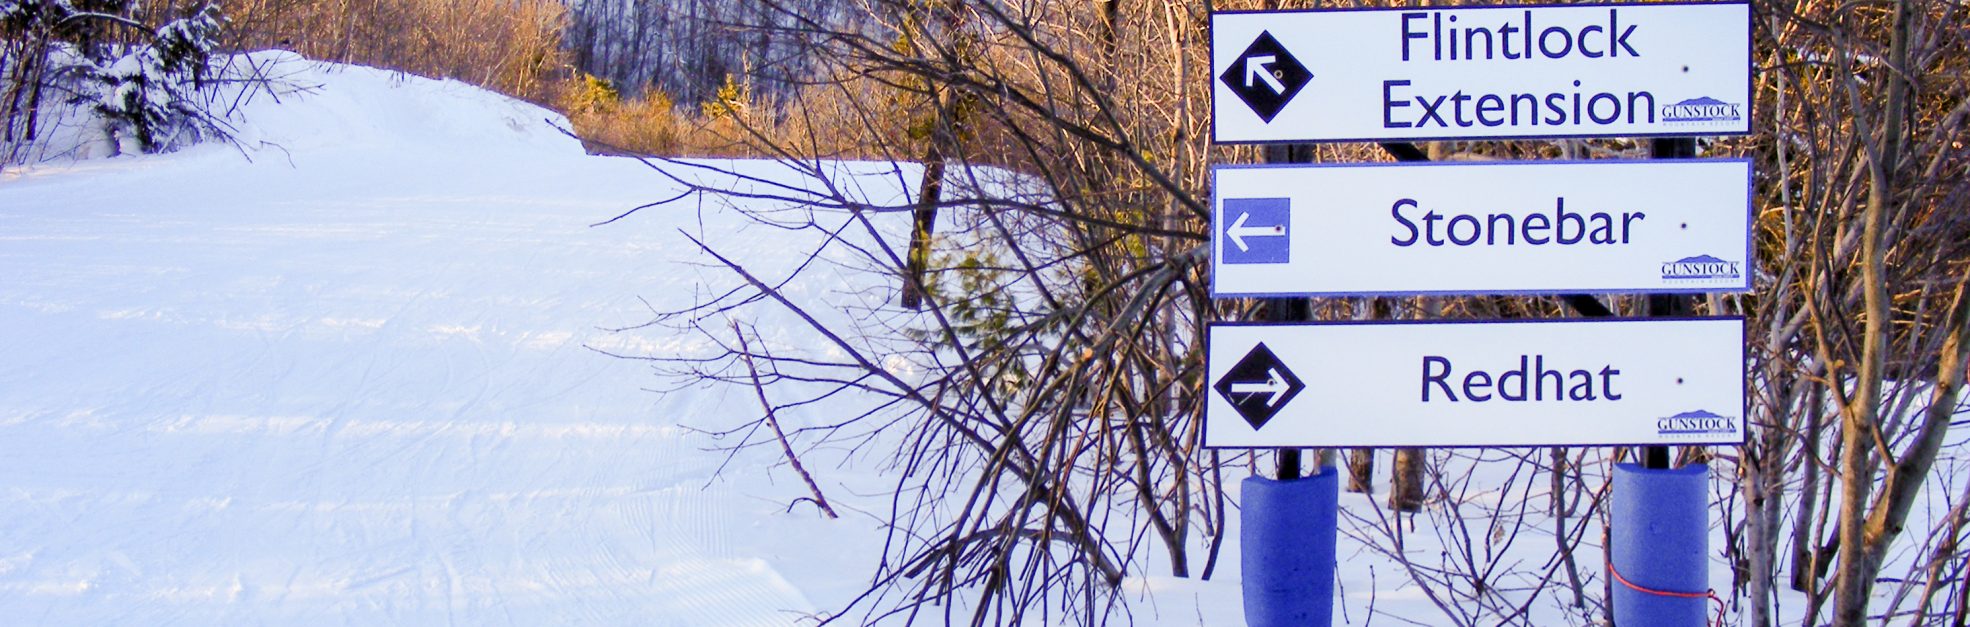 ski resort wayfinding signage